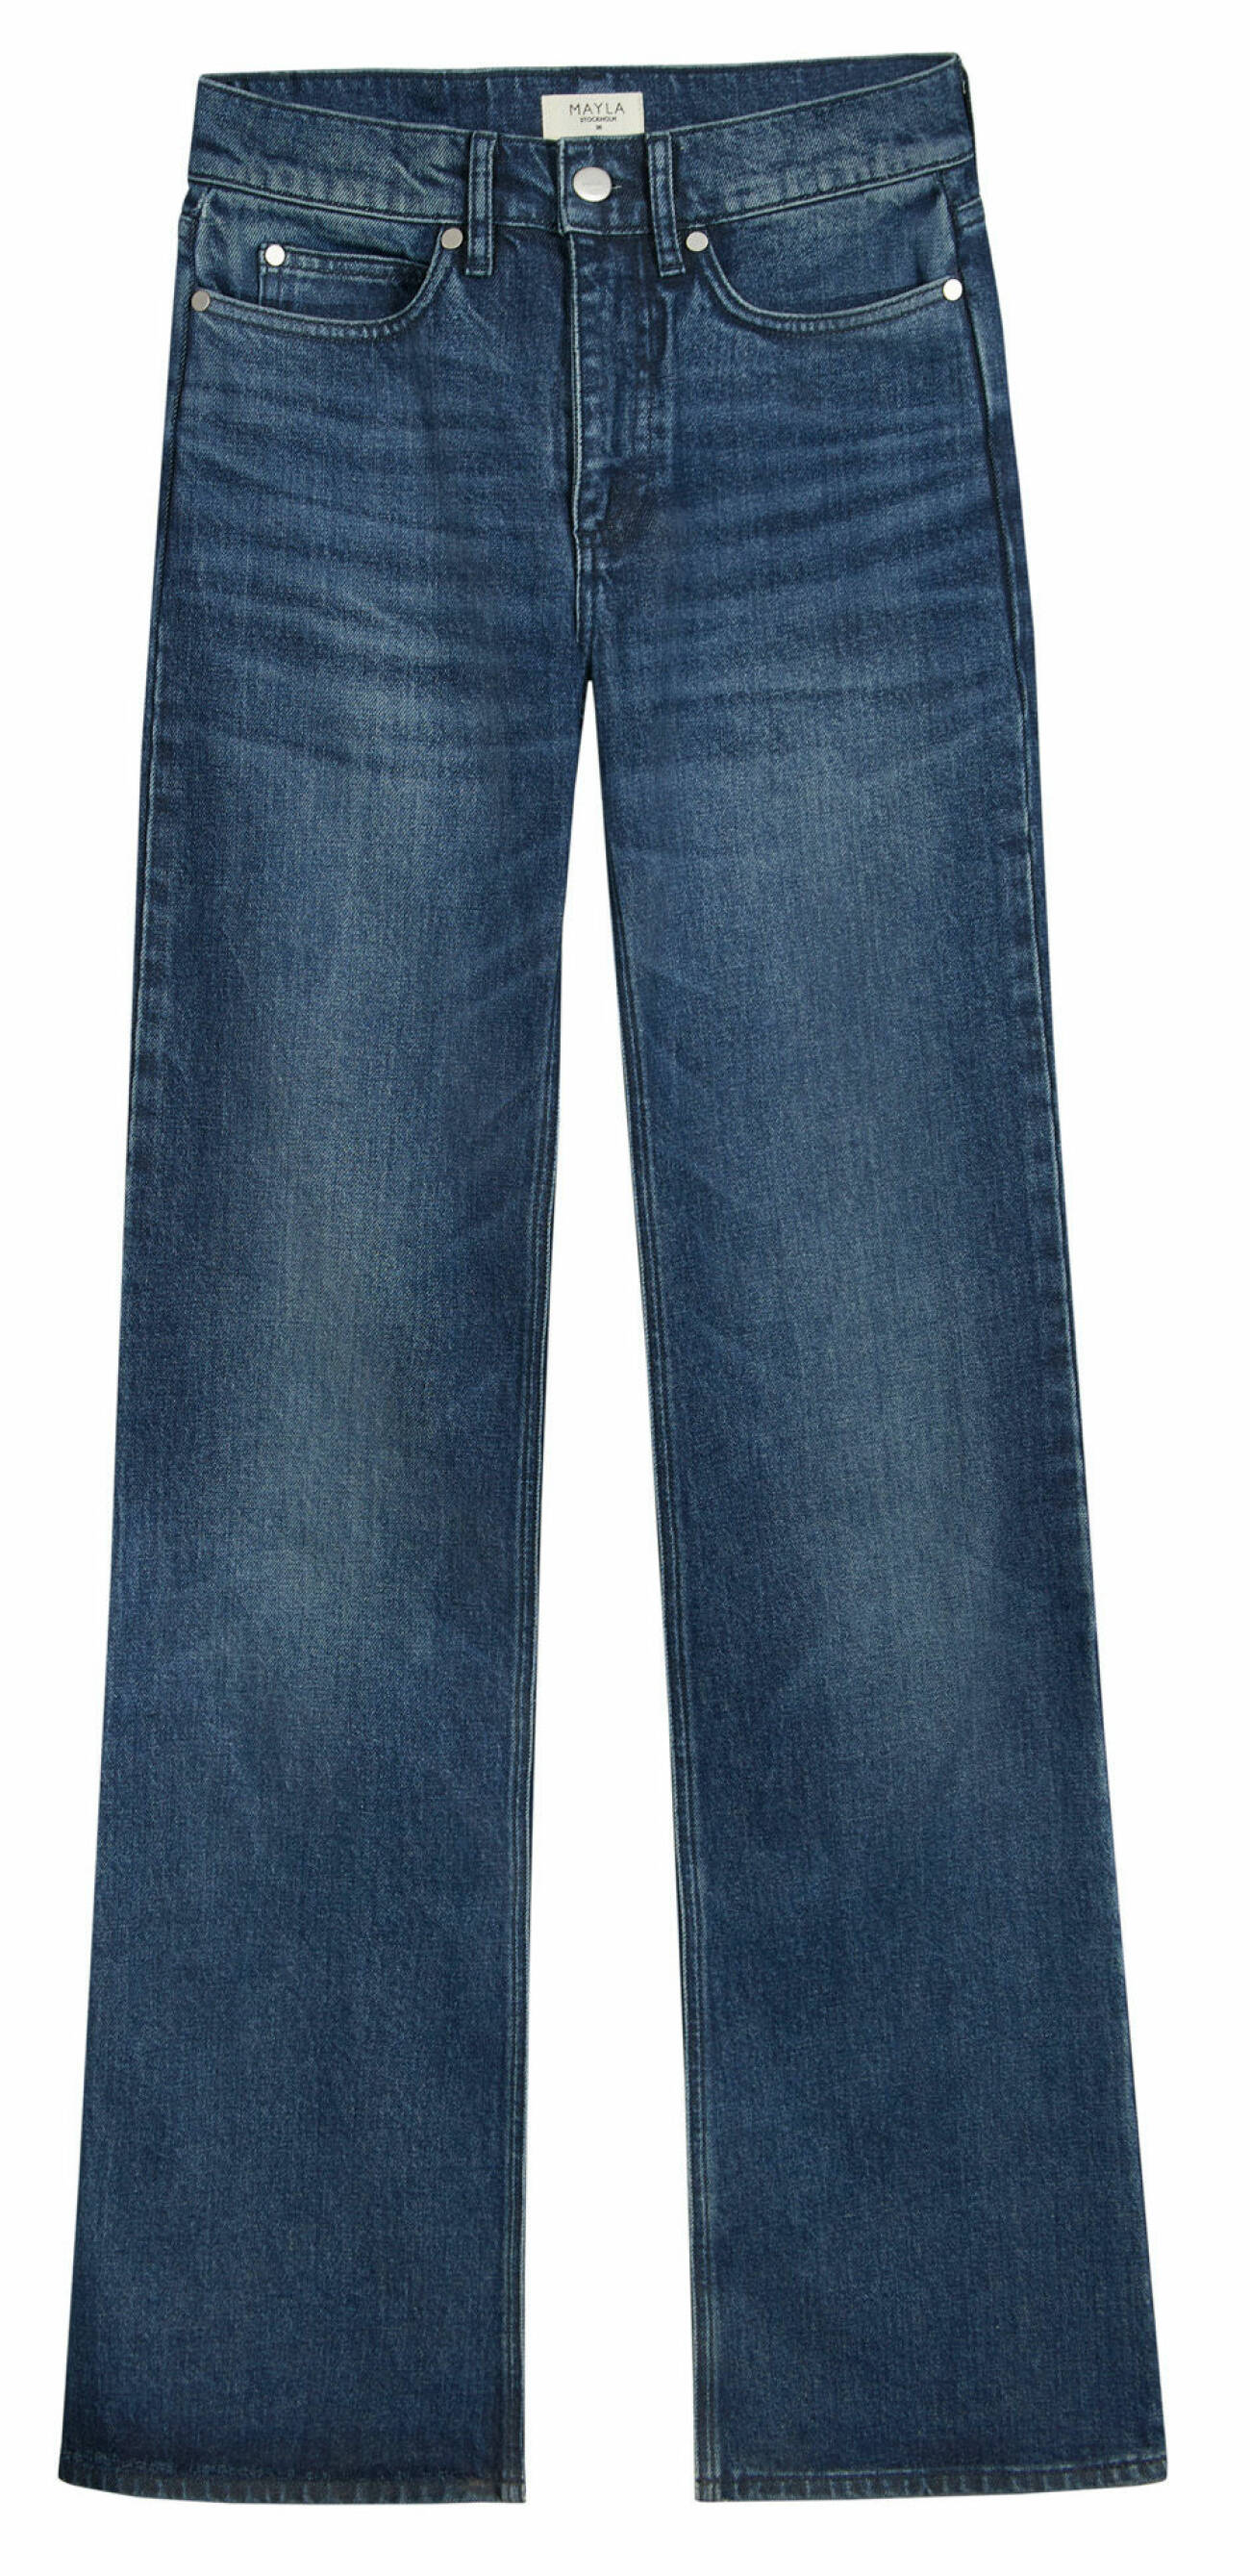 jeans från mayla i en mix av ekologisk bomull och återvunna material.